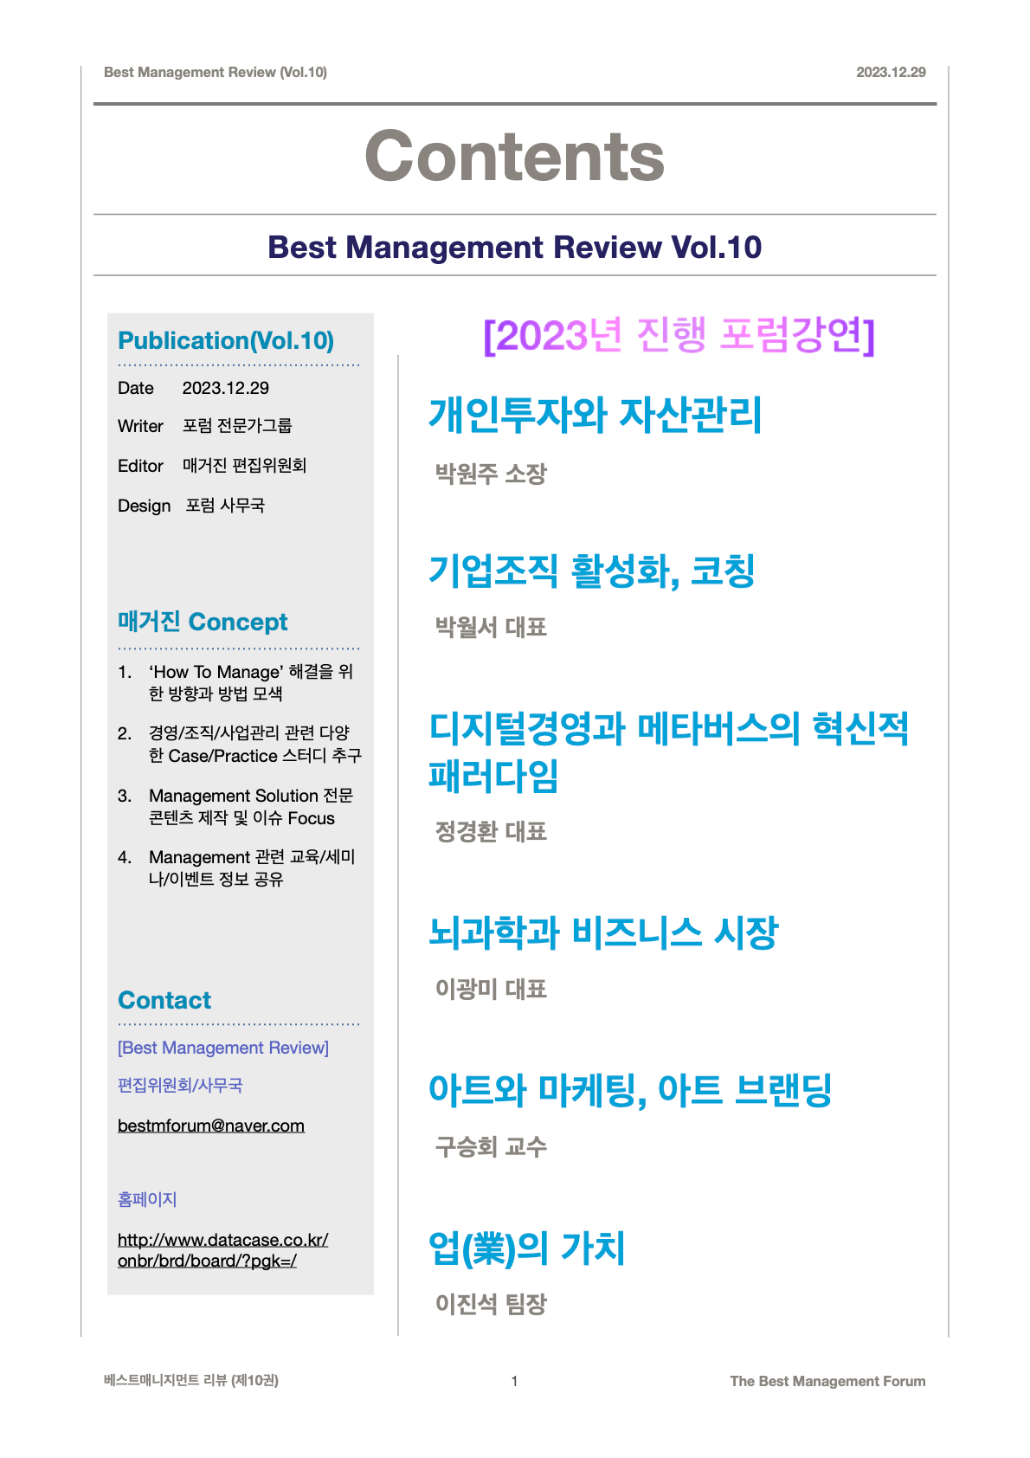 Best Management Review Vol.10 Contents(2023.12.29)